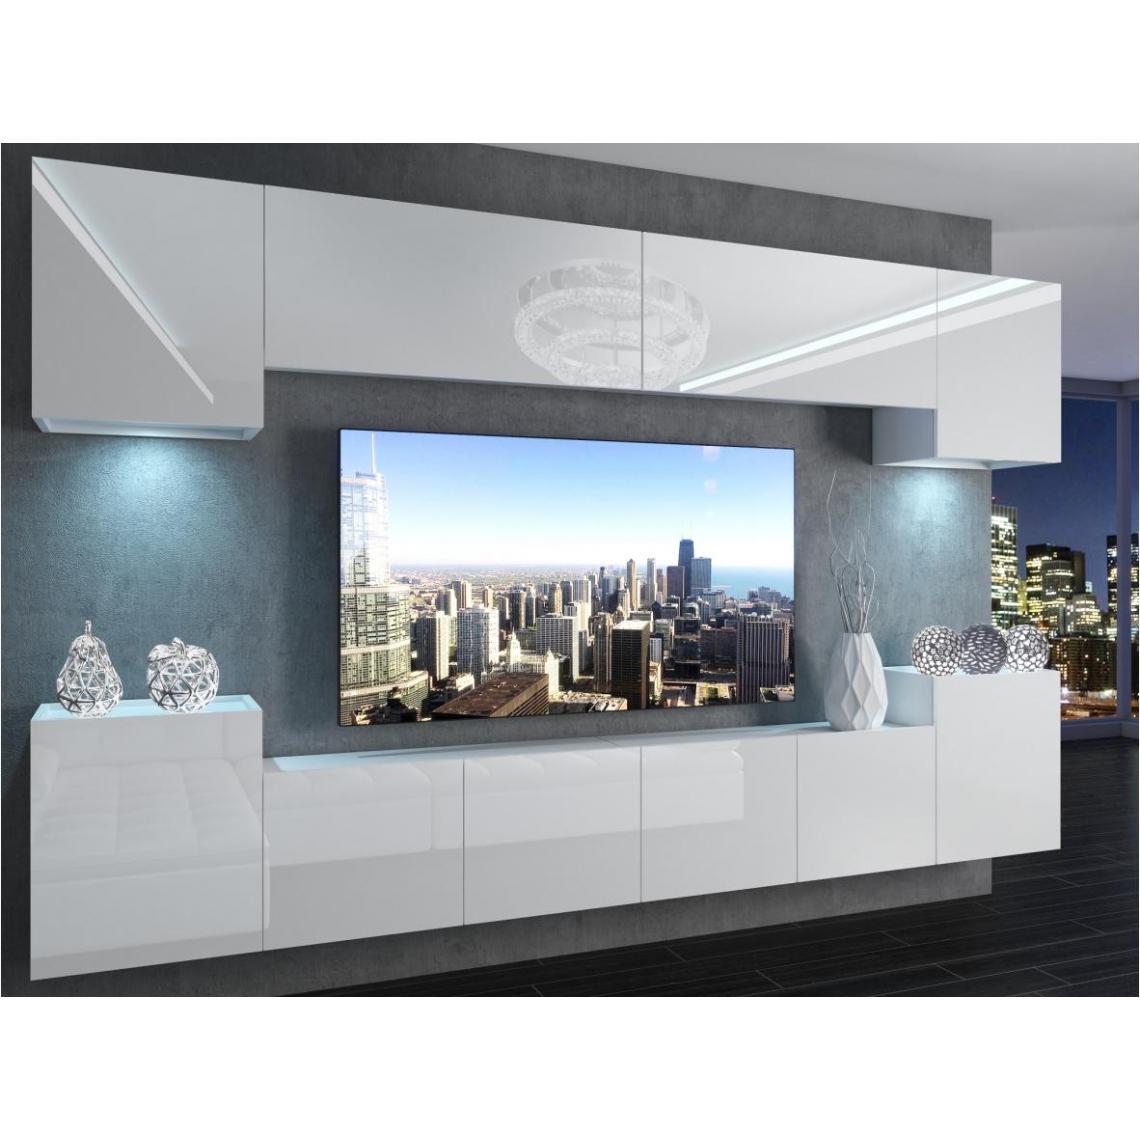 Hucoco - AREN - Ensemble meubles TV - Unité murale largeur 300 cm - Mur TV à suspendre finition gloss - Sans LED - Blanc - Meubles TV, Hi-Fi